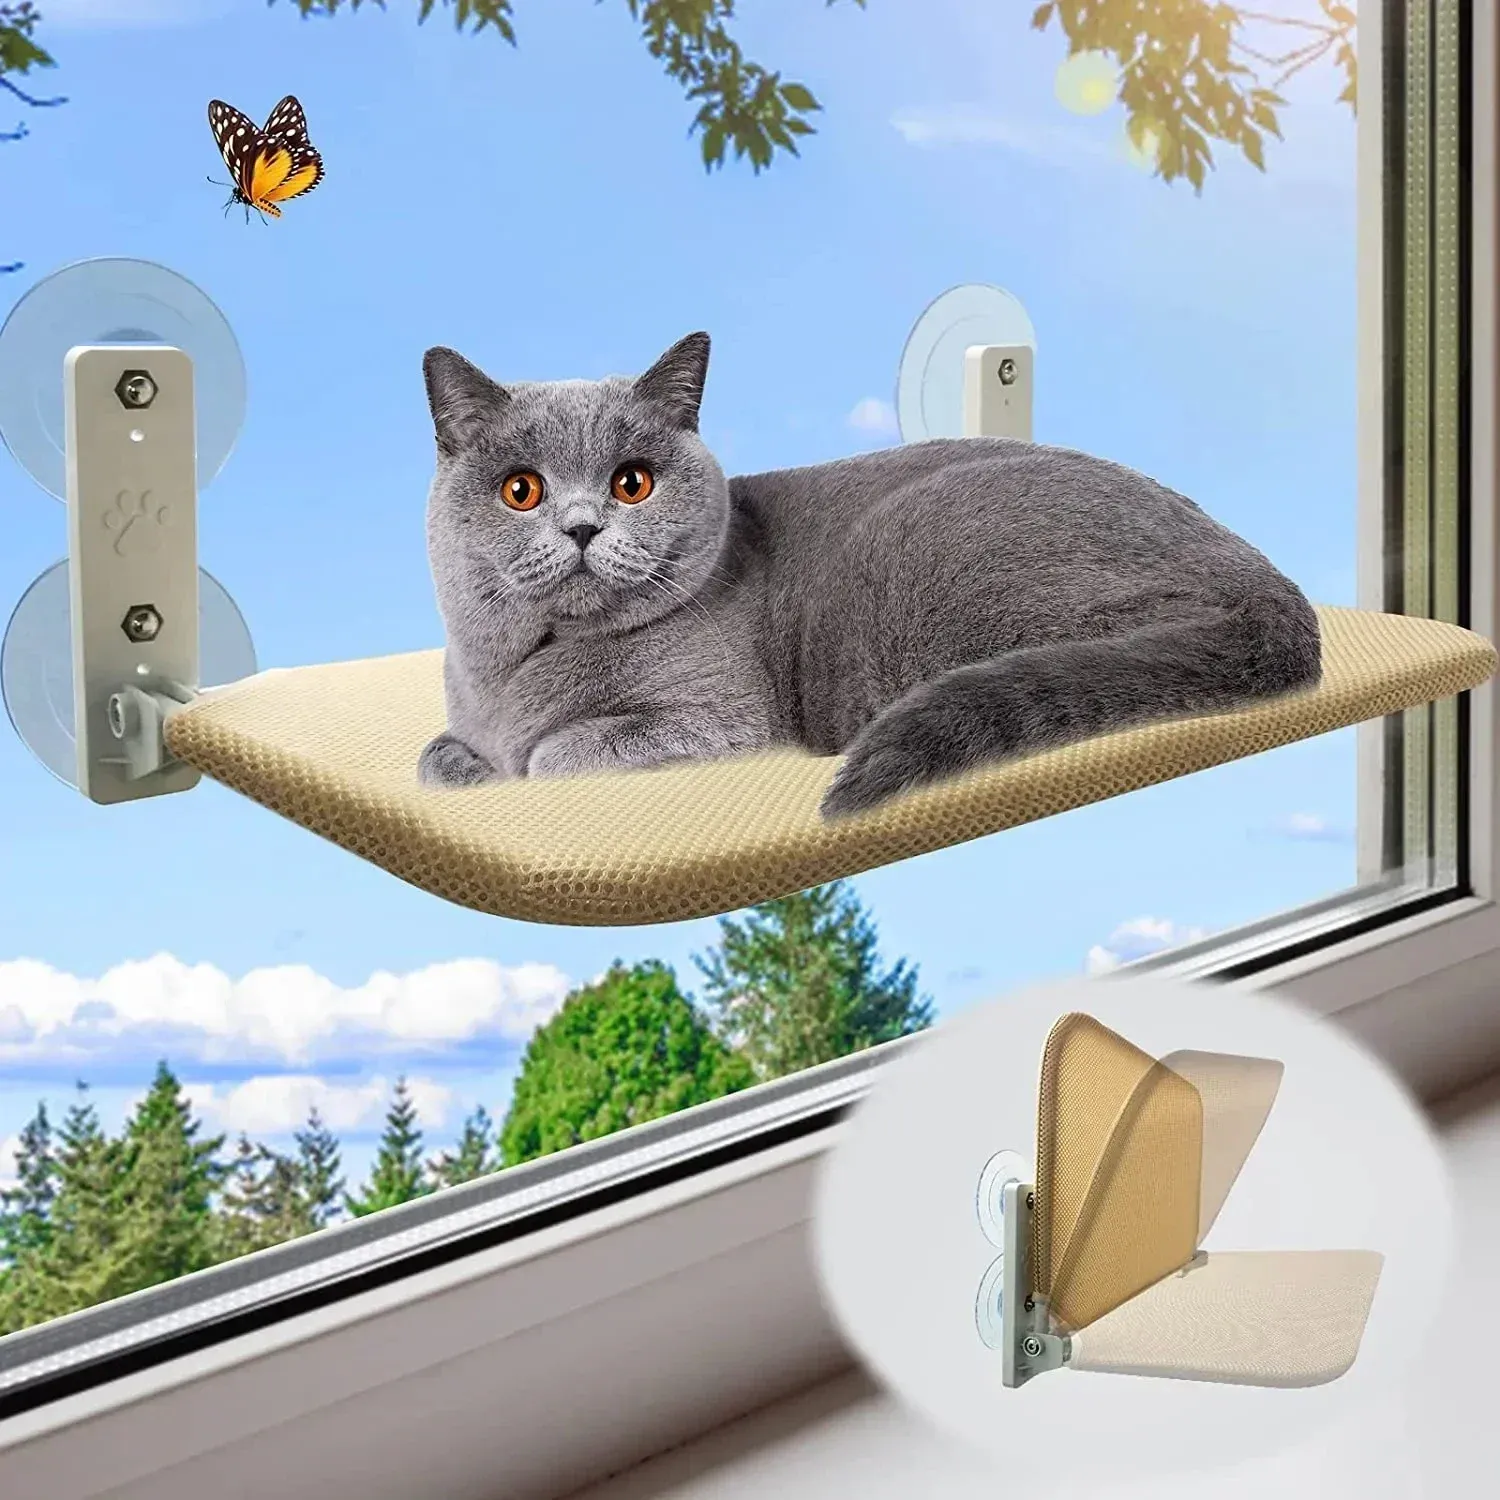 Maty 1 szt. Składany kot hamakowy okno oddychający pasza kota pojemność łóżka 10 kg kota akcesoria kota